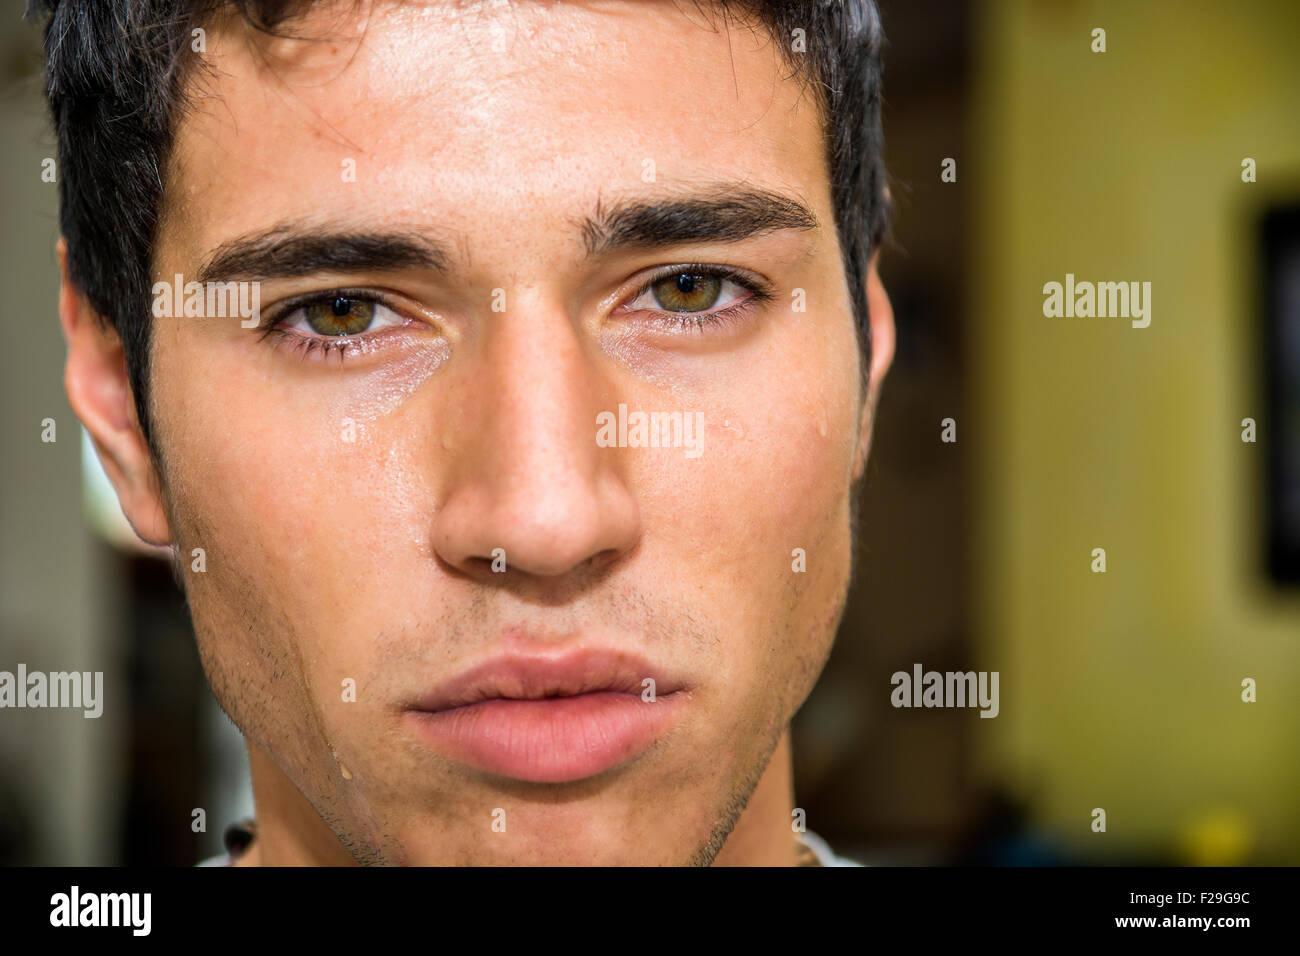 Close up visage d'un beau jeune homme pensif avec des larmes sur son visage, Looking at Camera, inquiets ou tristes. Banque D'Images